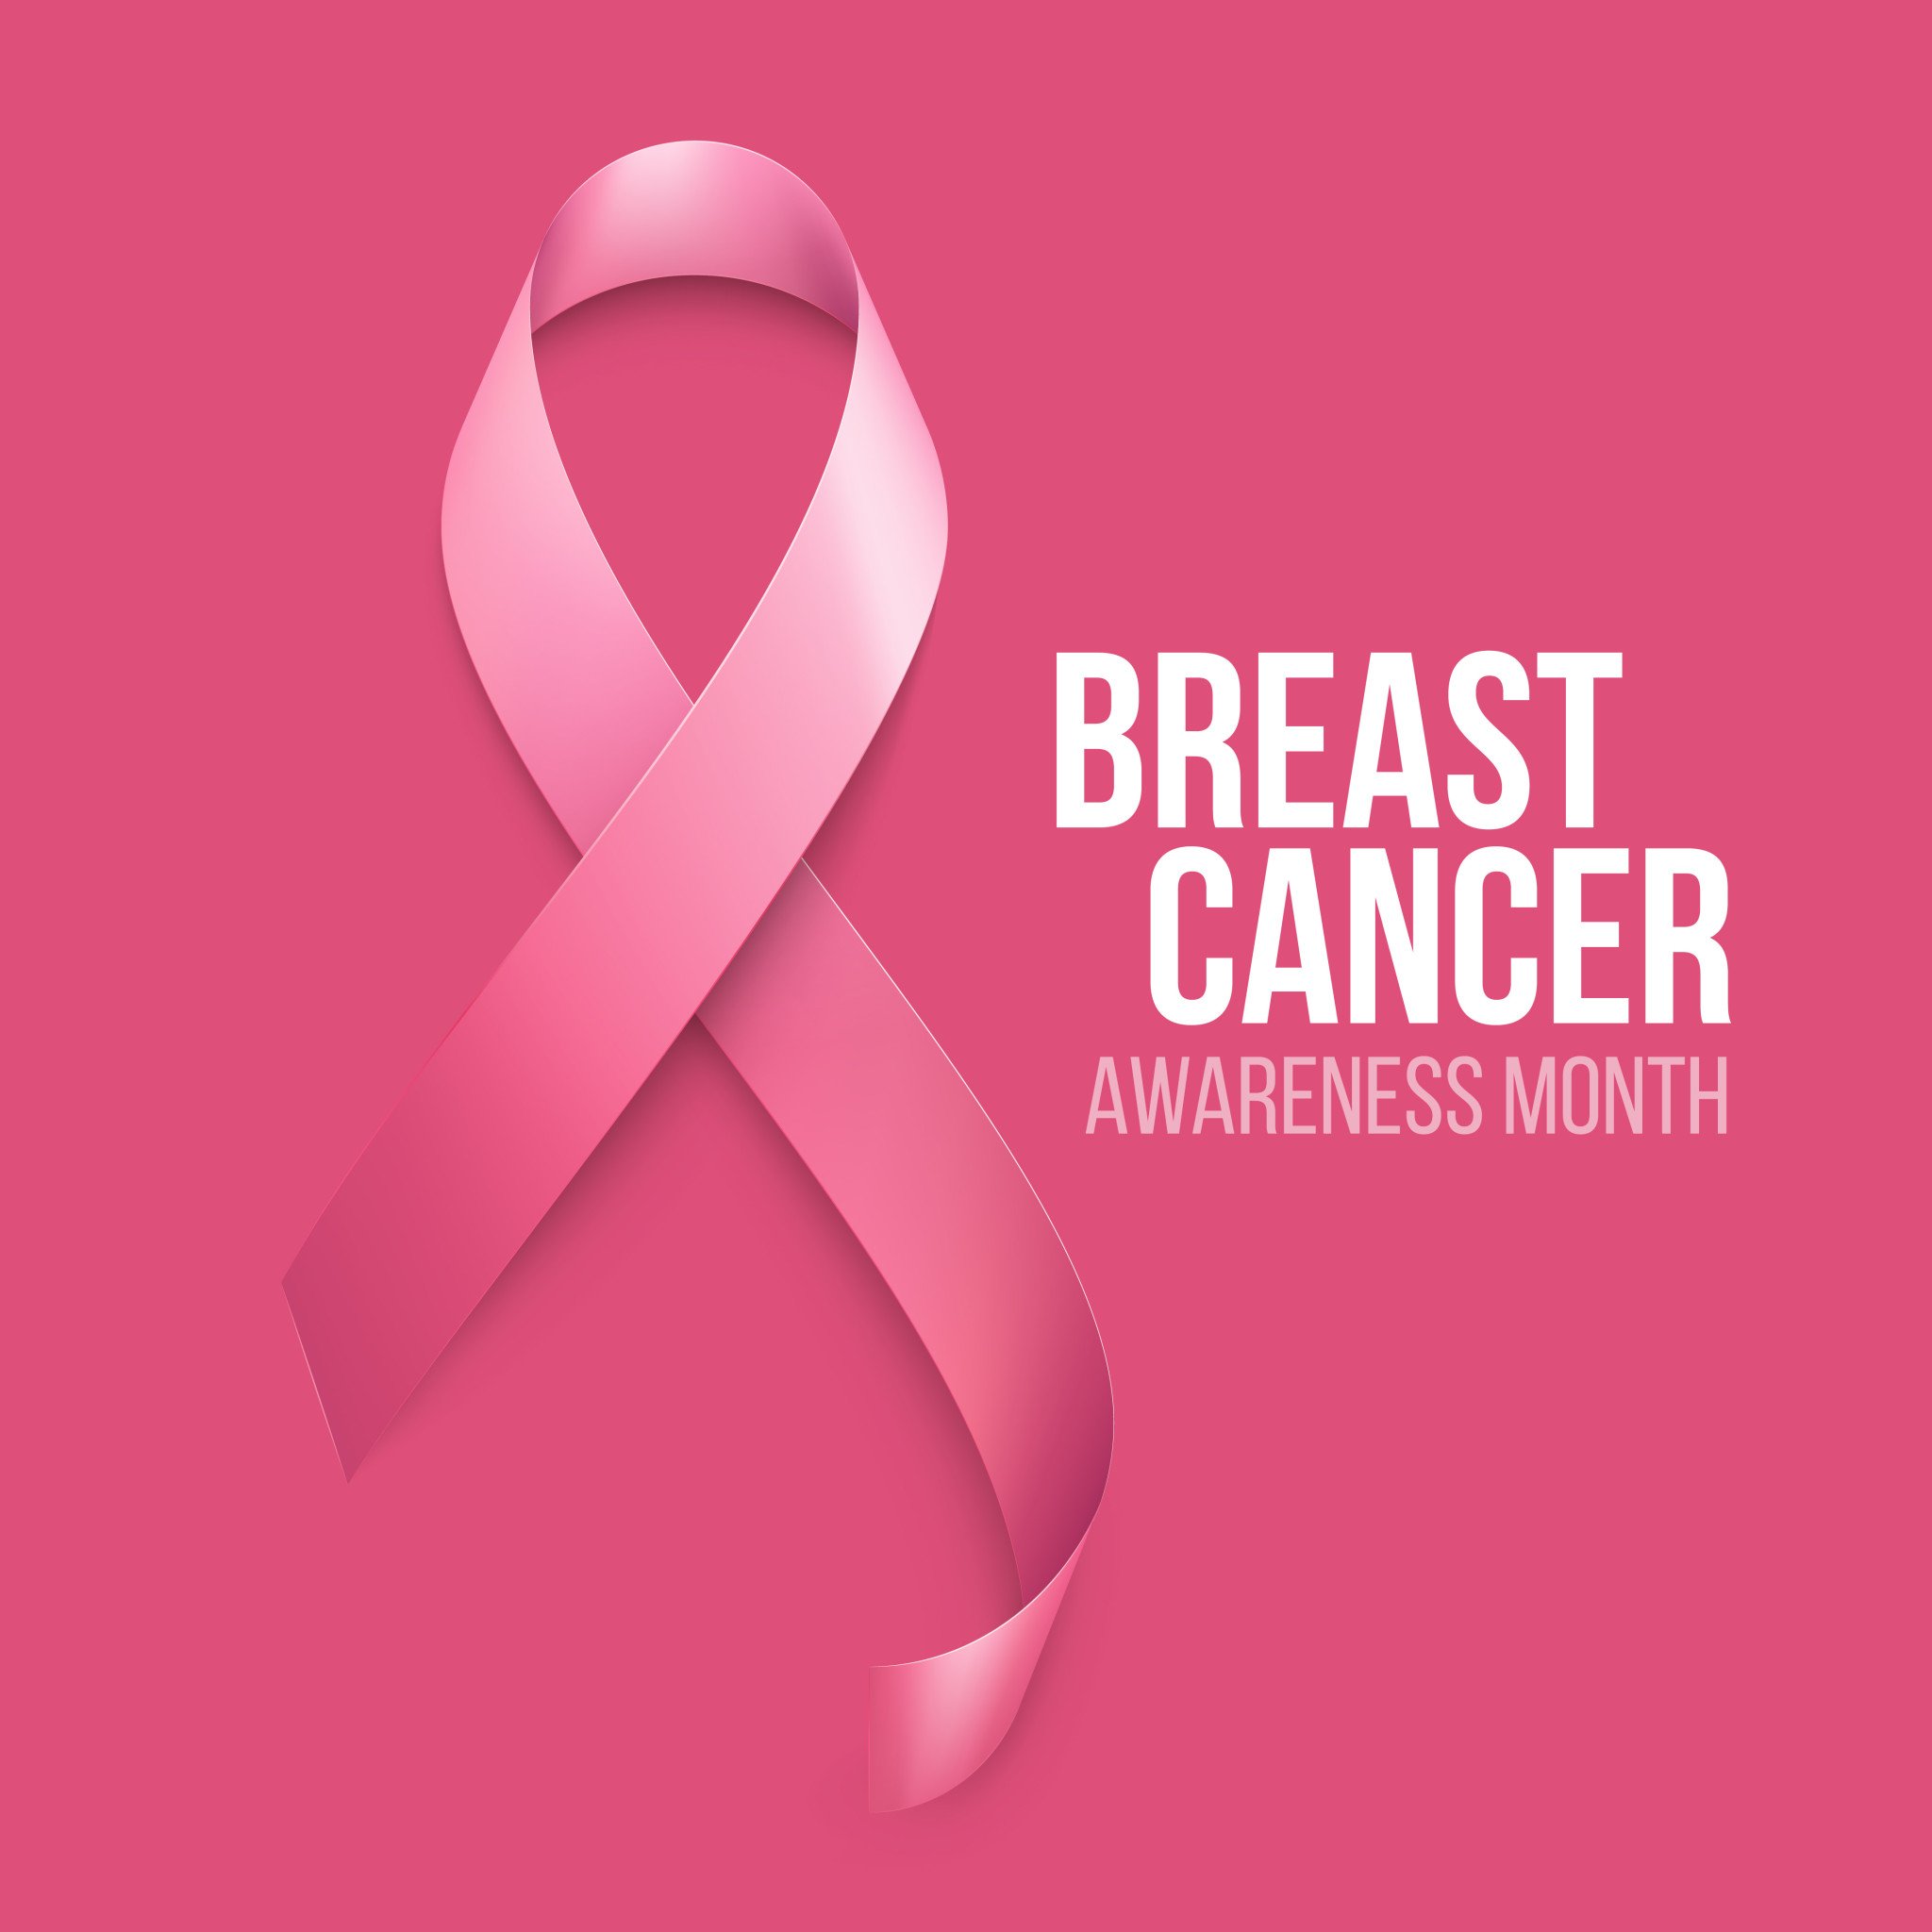 October is Brest Cancer Awareness Month